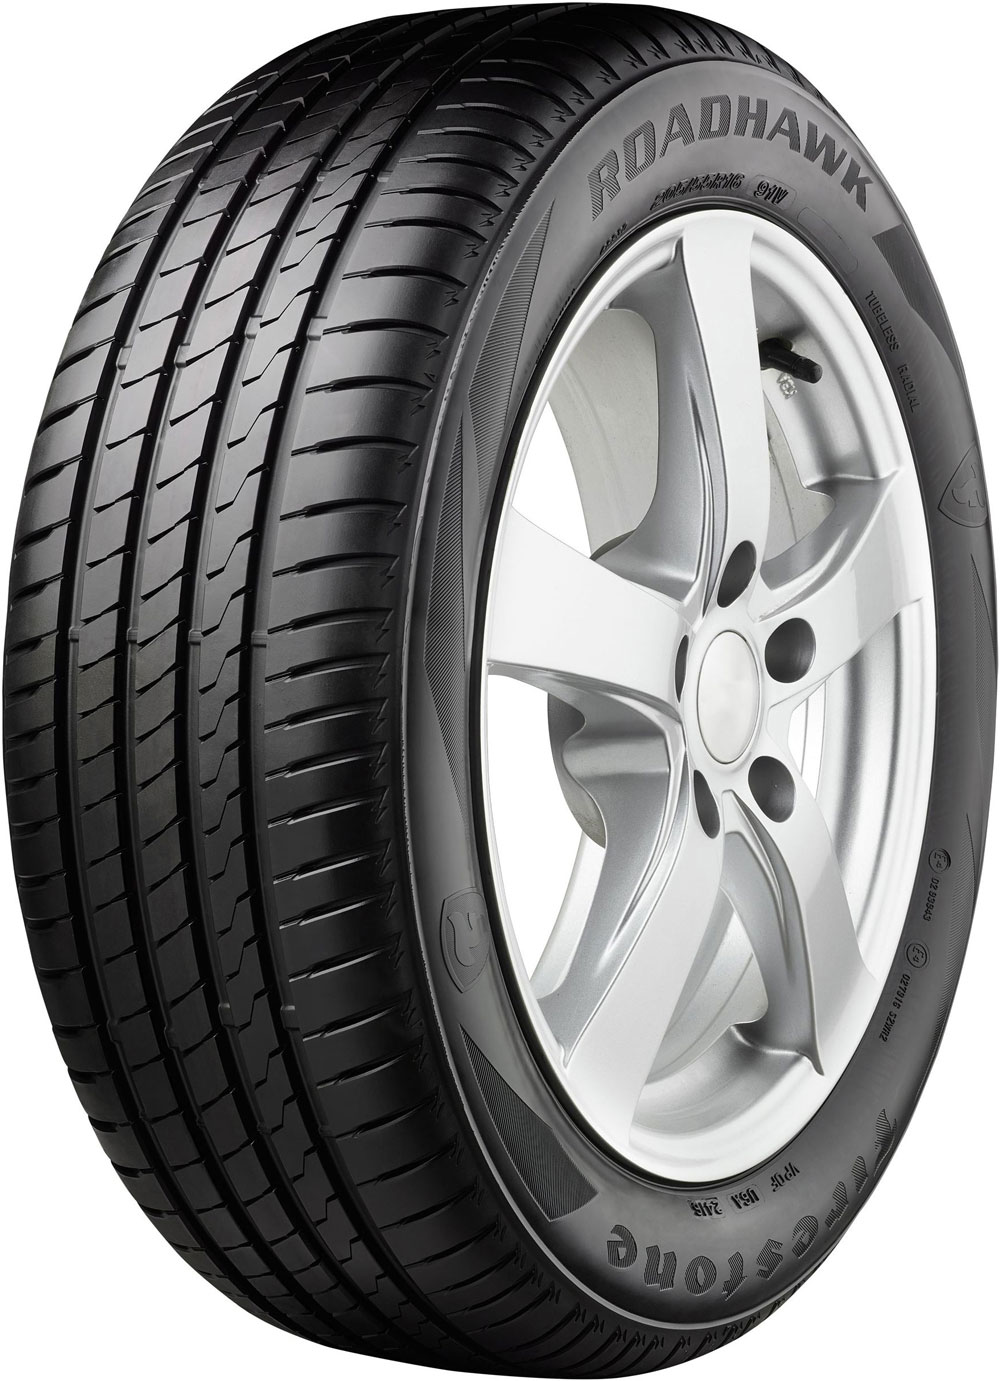 Автомобилни гуми FIRESTONE ROADHAWK XL XL 245/40 R18 97Y